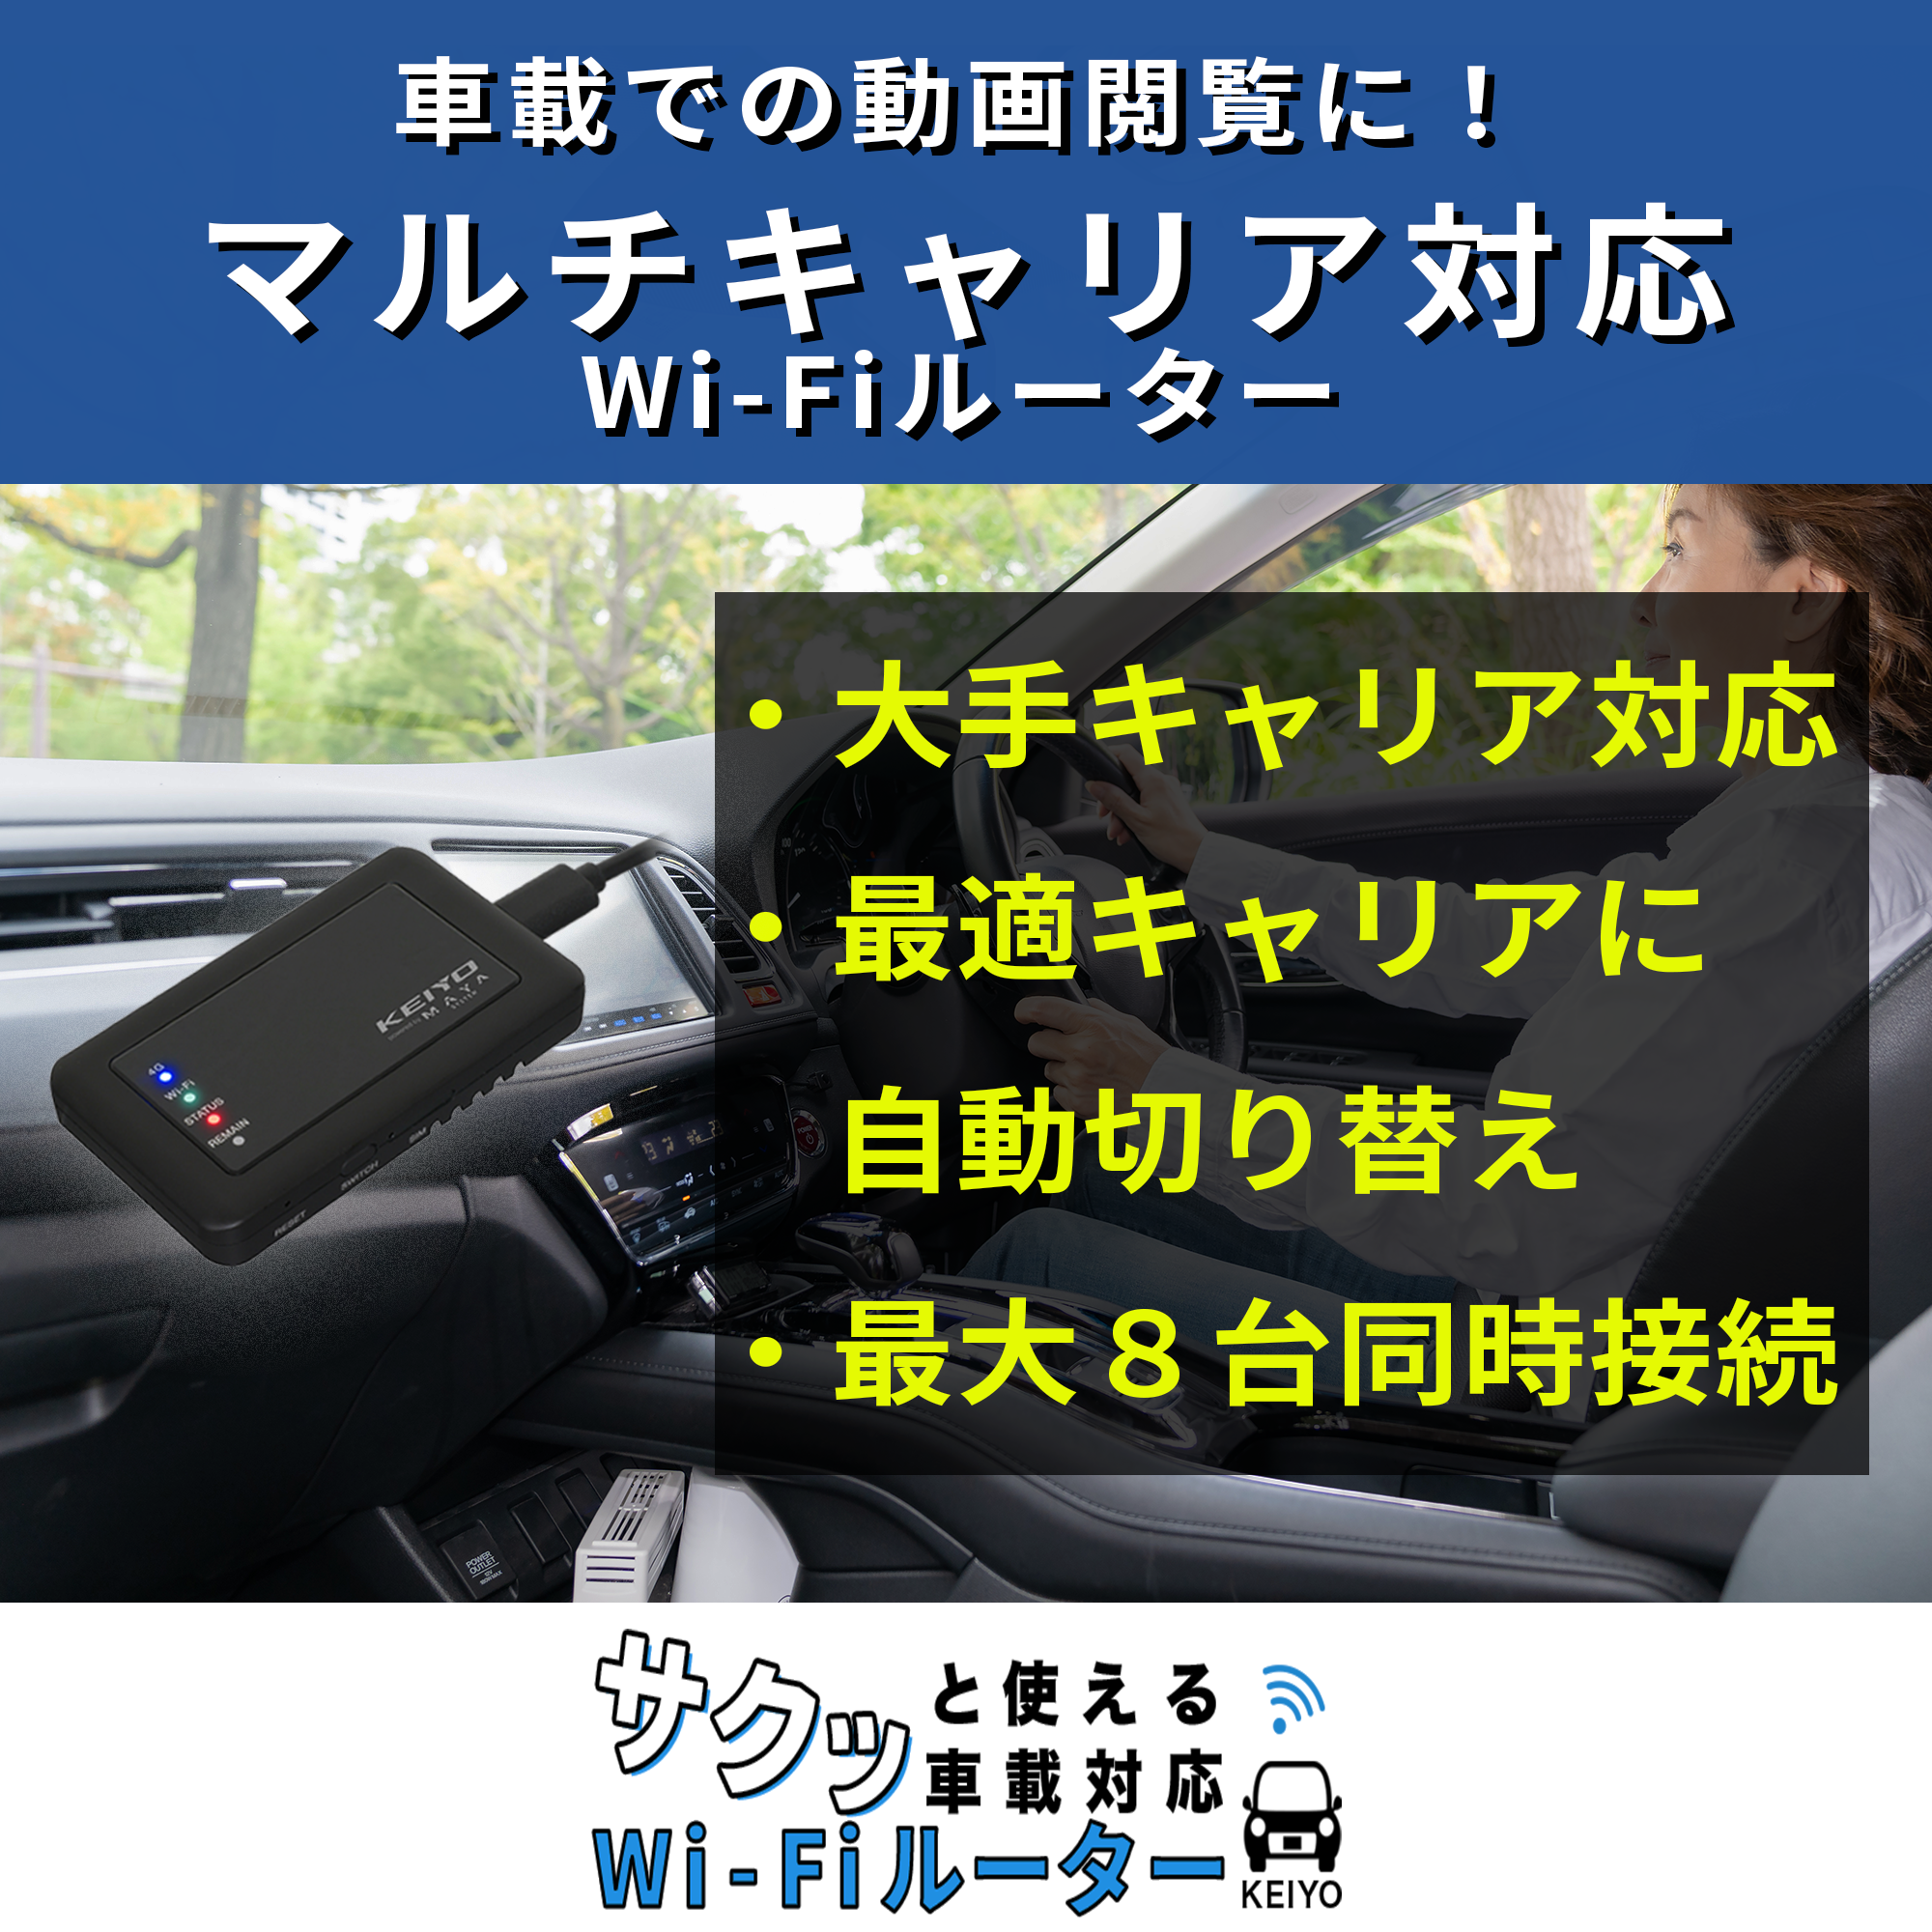 サクッと使える車載対応Wi-FiルーターAN-S117 | 株式会社慶洋 